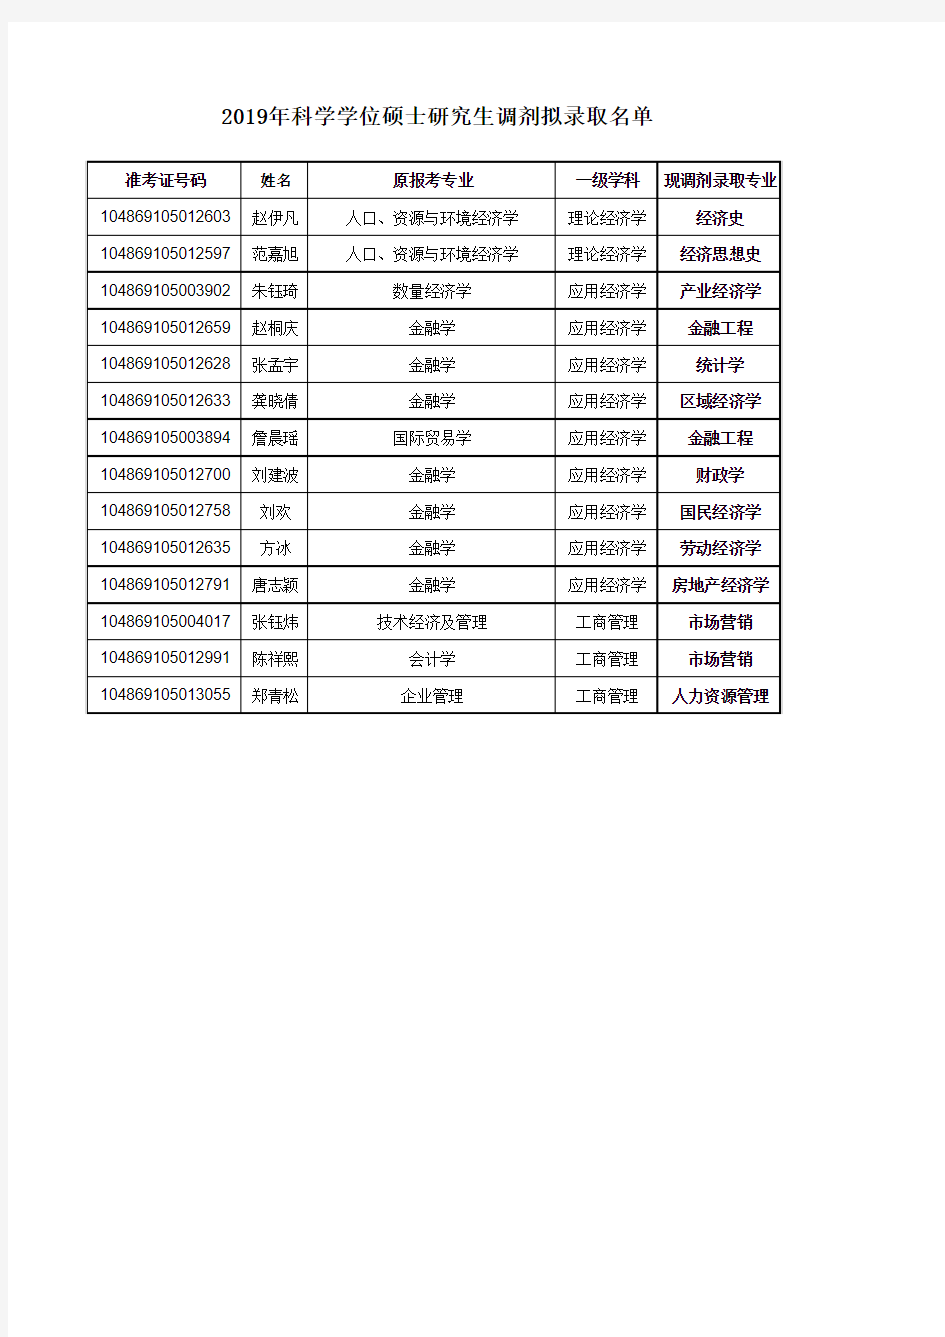 武汉大学经济与管理学院2019年科学学位硕士研究生调剂拟录取名单公示